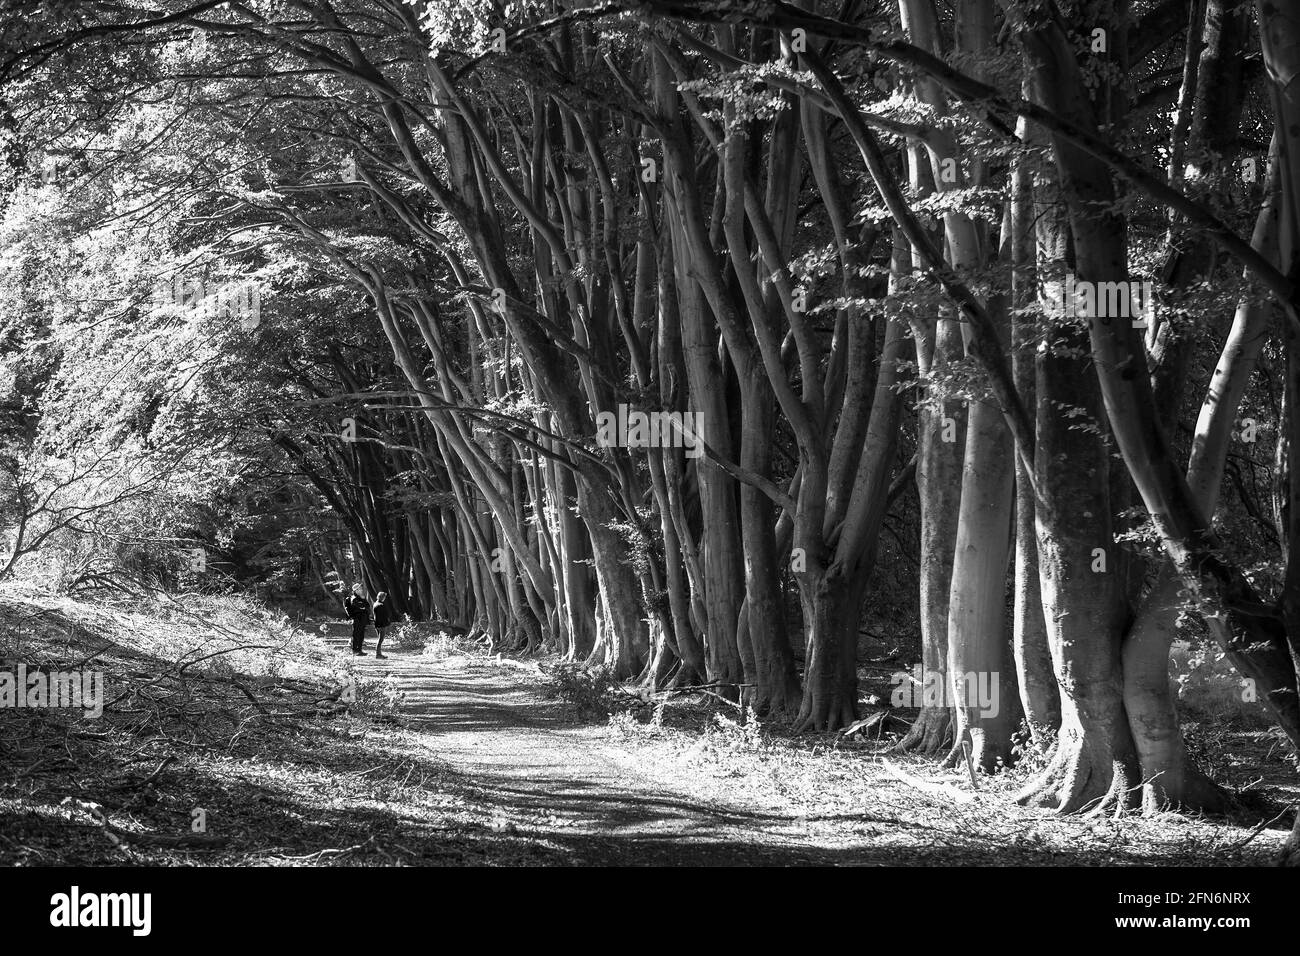 Randonneurs sur un chemin le long d'une avenue en hêtre près de Chilgrove, South Downs National Park, West Sussex, Angleterre, Royaume-Uni. Version noir et blanc. MODÈLE LIBÉRÉ Banque D'Images